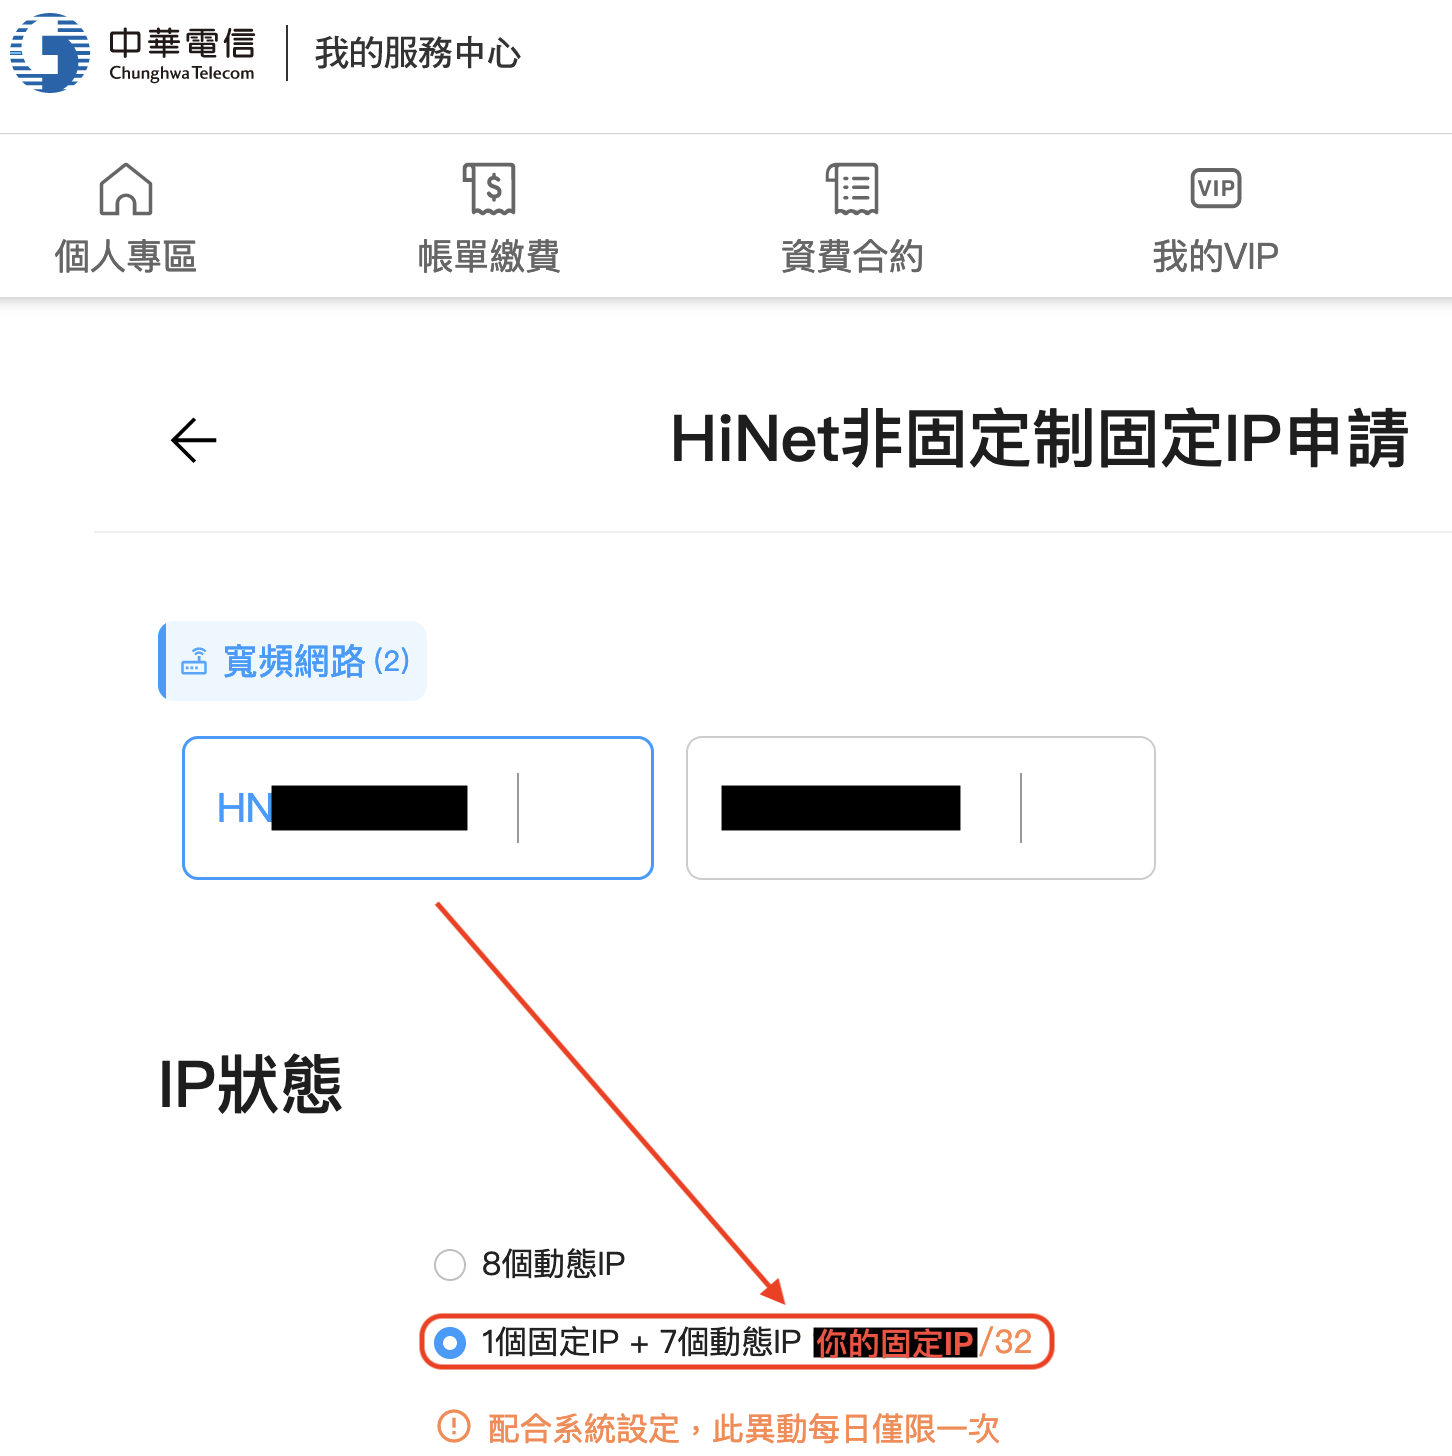 HiNet非固定固定IP申請